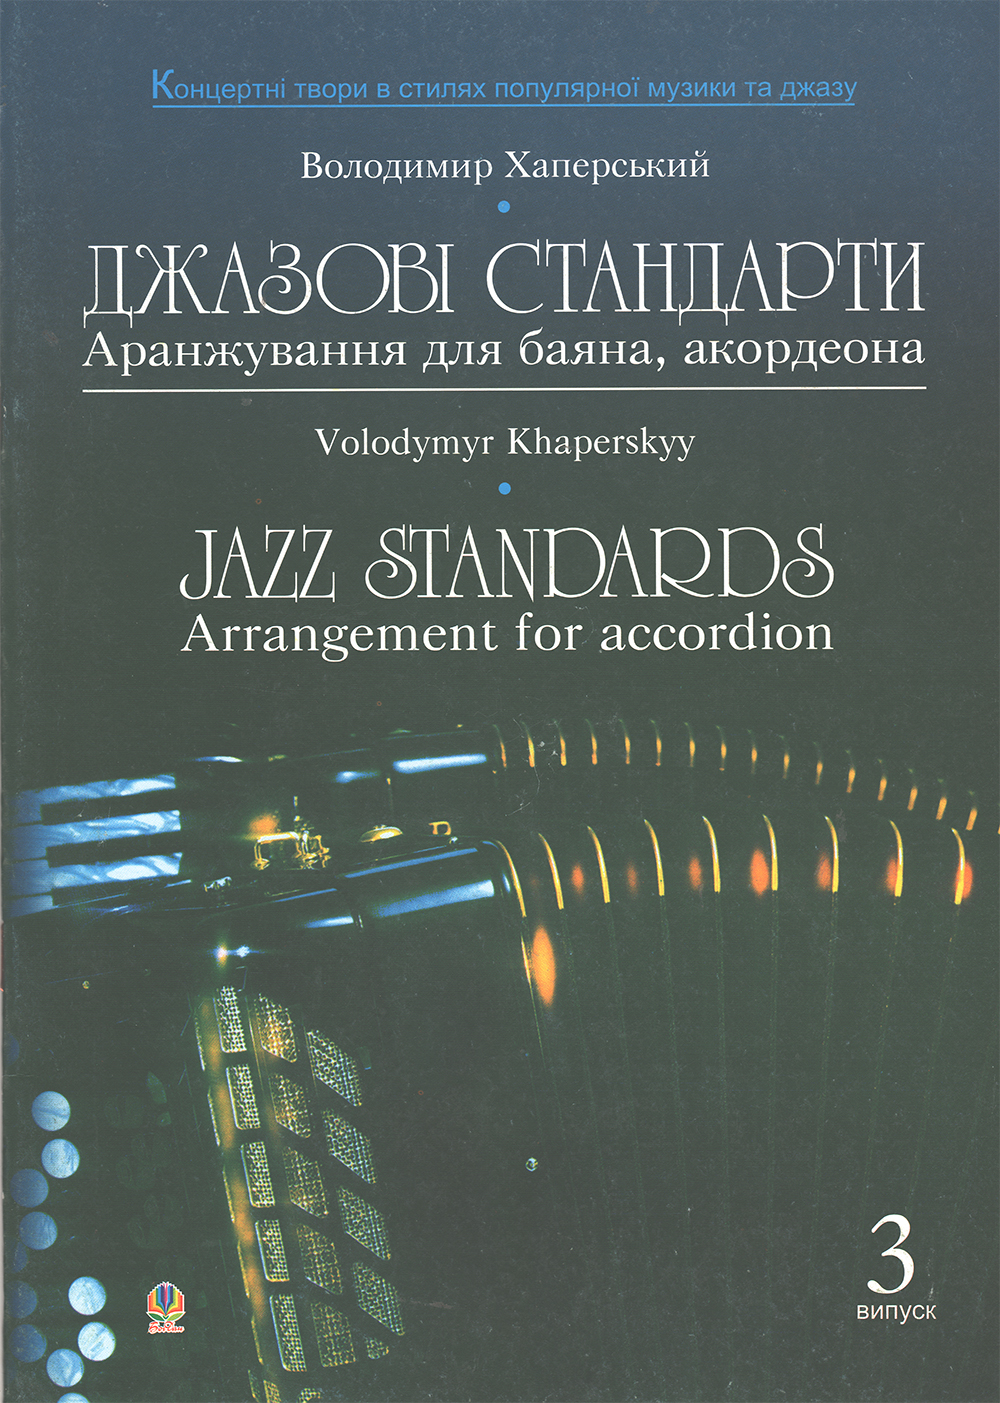 Ноты Джазові стандарти (аранжування для баяна, акордеона)